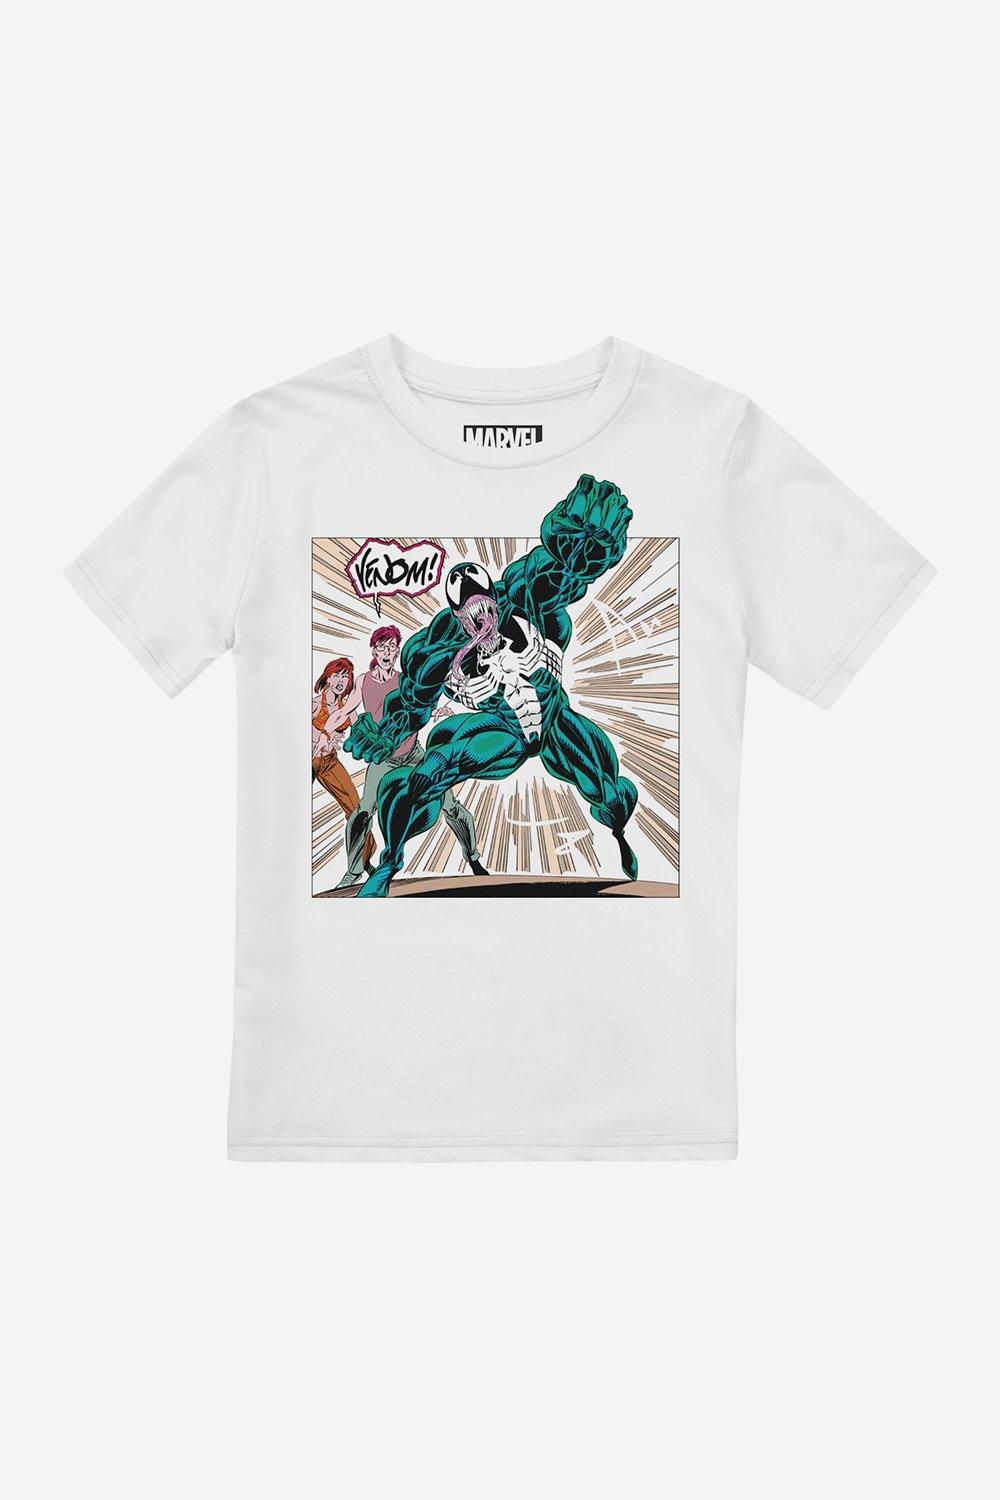 Venom Comic Boys T-Shirt